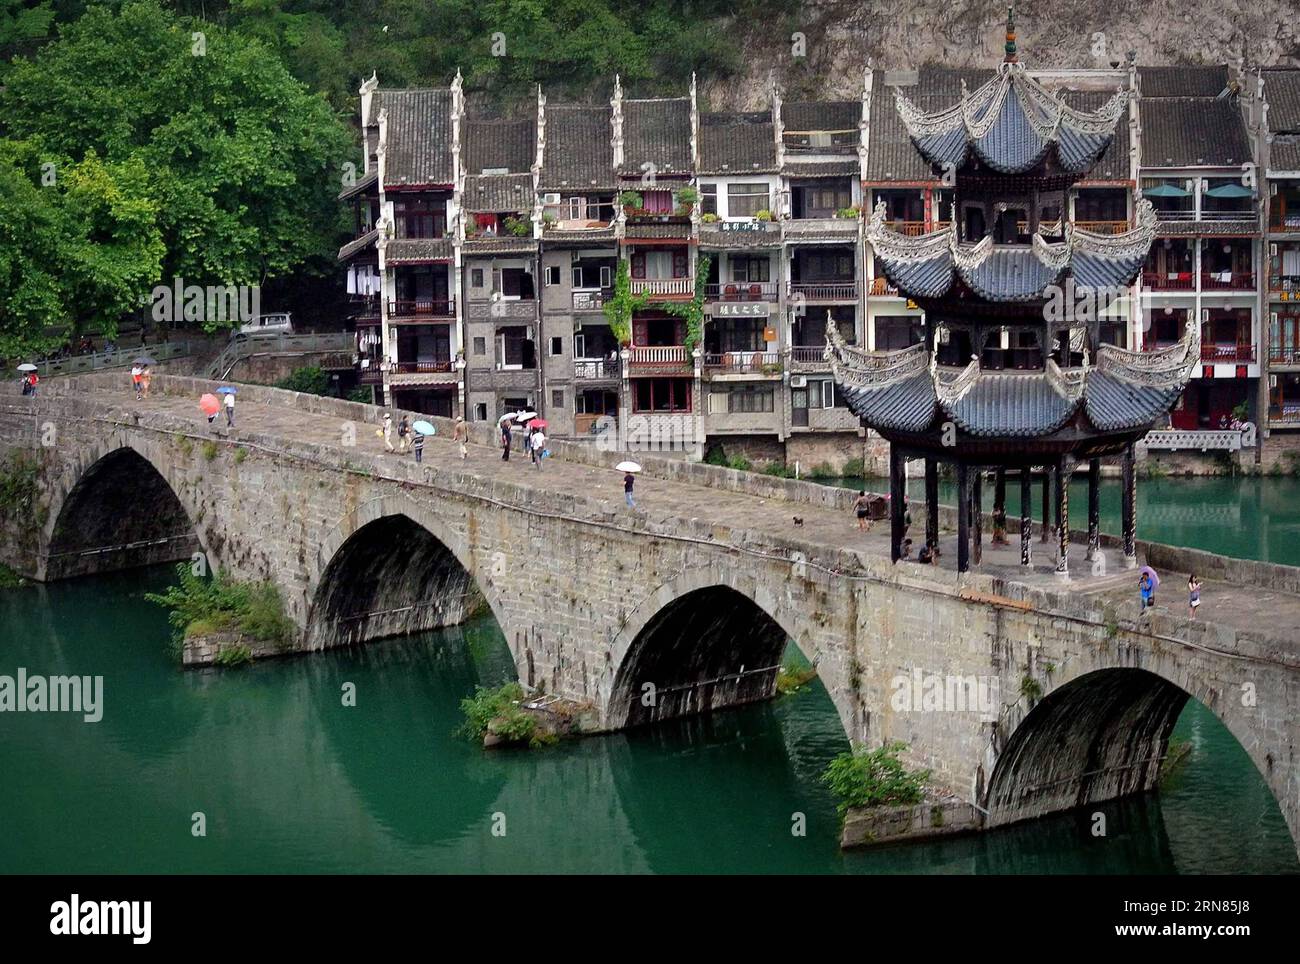 (151008) -- PEKING, - Foto aufgenommen am 31. August 2012 zeigt die Zhusheng-Brücke im Kreis Zhenyuan, Provinz Guizhou im Südwesten Chinas. Die 135 Meter lange Brücke wurde in der Ming-Dynastie (1368–1644) gebaut. (wyo) CHINA-ANCIENT BRIDGES (CN) WangxSong PUBLICATIONxNOTxINxCHN 151008 Peking Foto aufgenommen AM 31 2012. August zeigt die Zhusheng-Brücke im Zhenyuan County Südwesten Chinas Provinz S Guizhou die 135 Meter Brücke, was in der Ming-Dynastie 1368 1644 wyo China Ancient Bridges CN wangxsong PUBLICATIONxNOTxCHN gebaut wurde Stockfoto